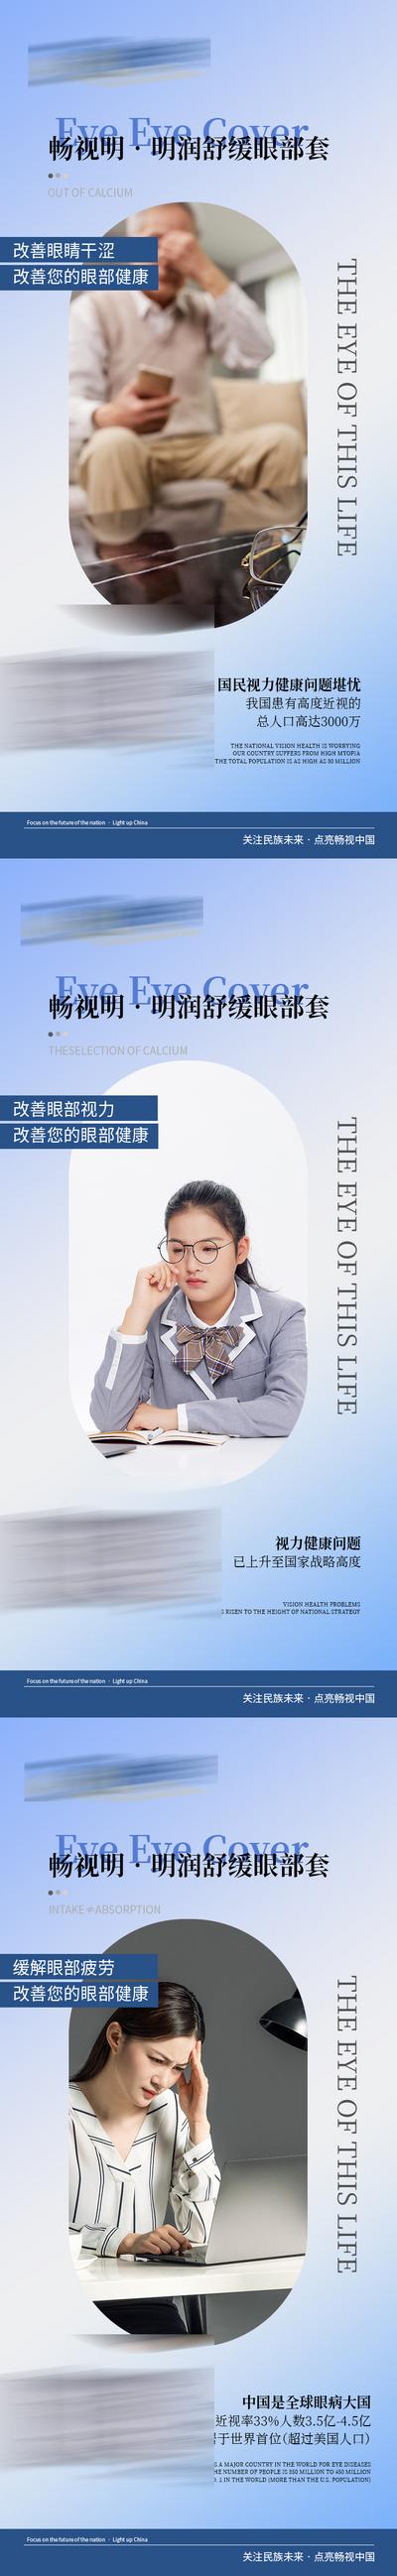 南门网 广告 海报 新零售 视力 眼睛 近视 宣传 微商 防控 护眼 大健康 保健 系列